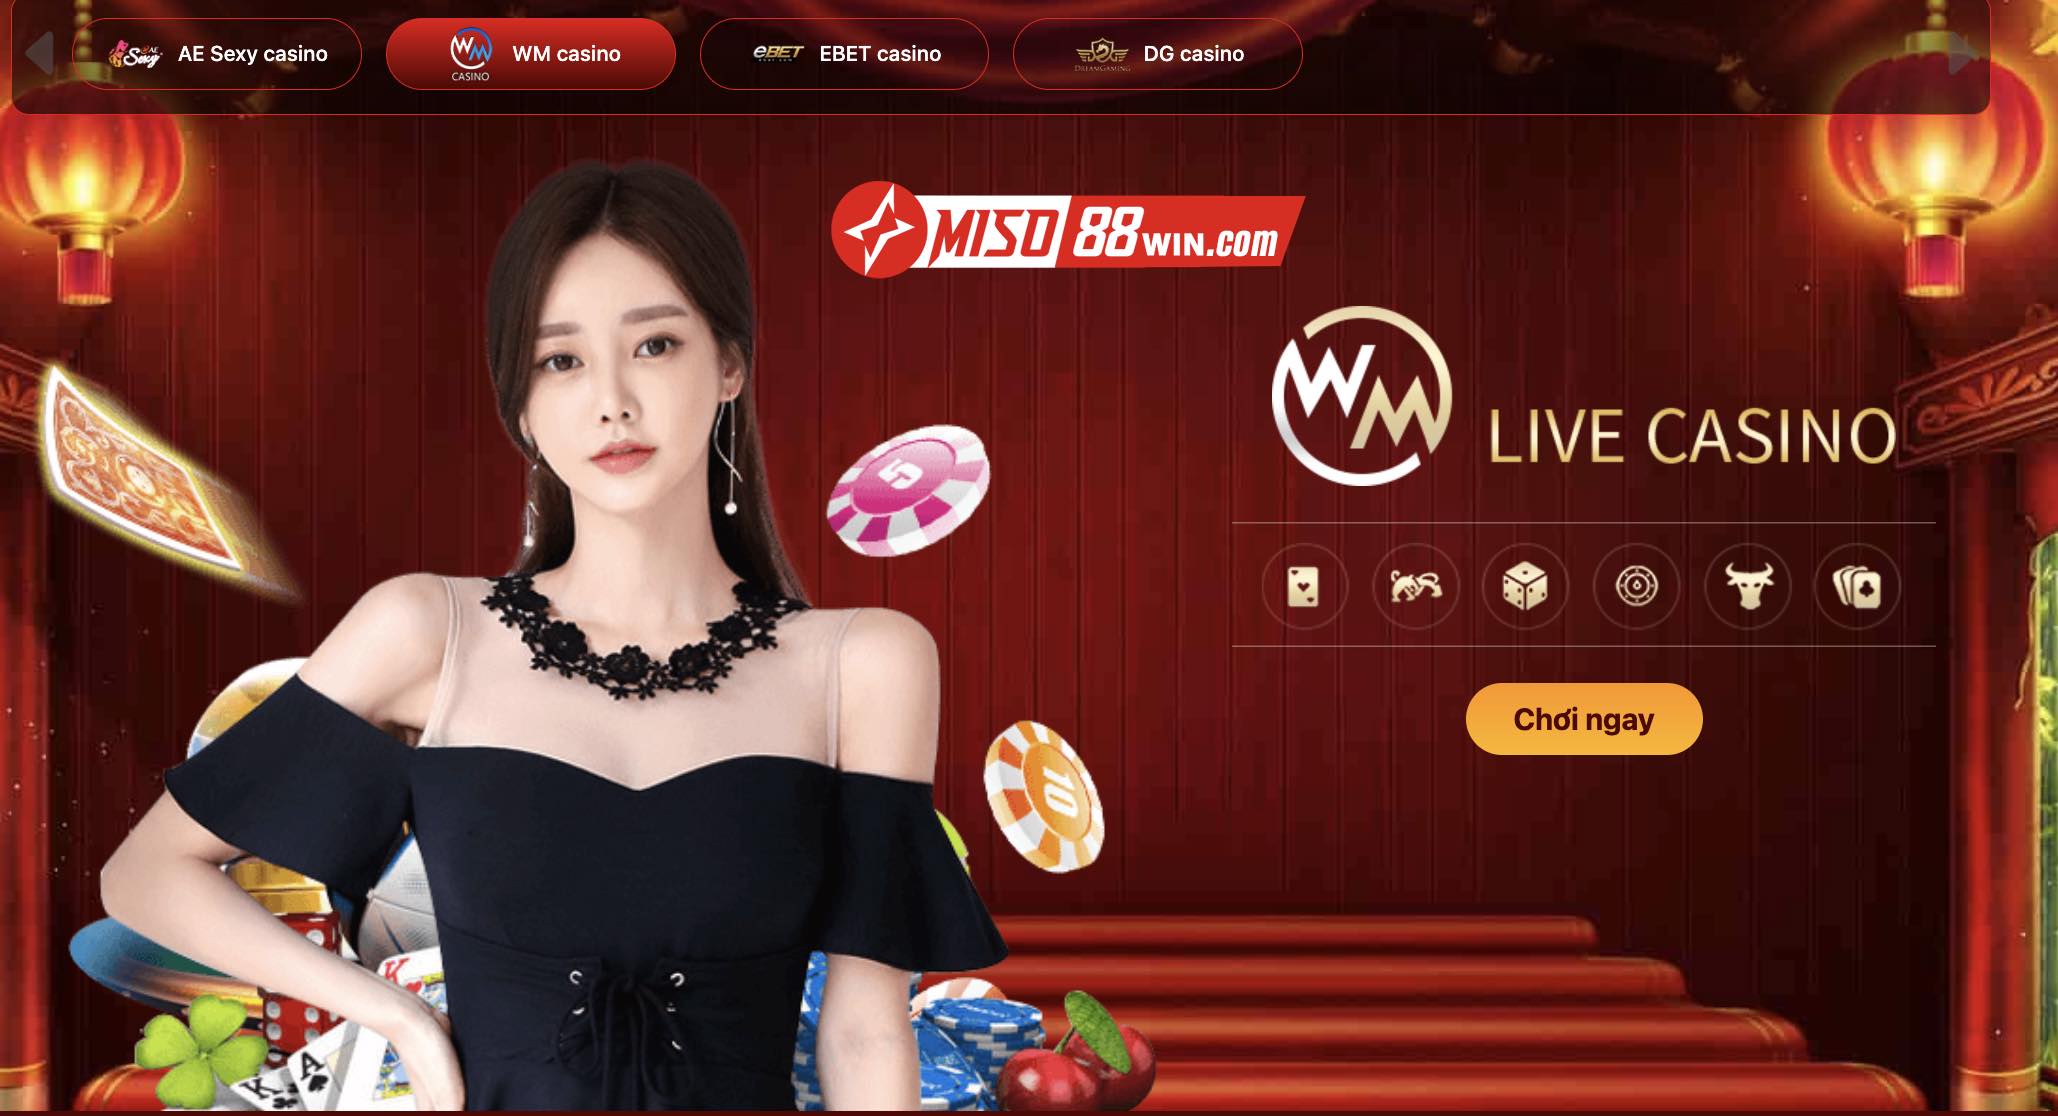 WM Live Casino Miso88